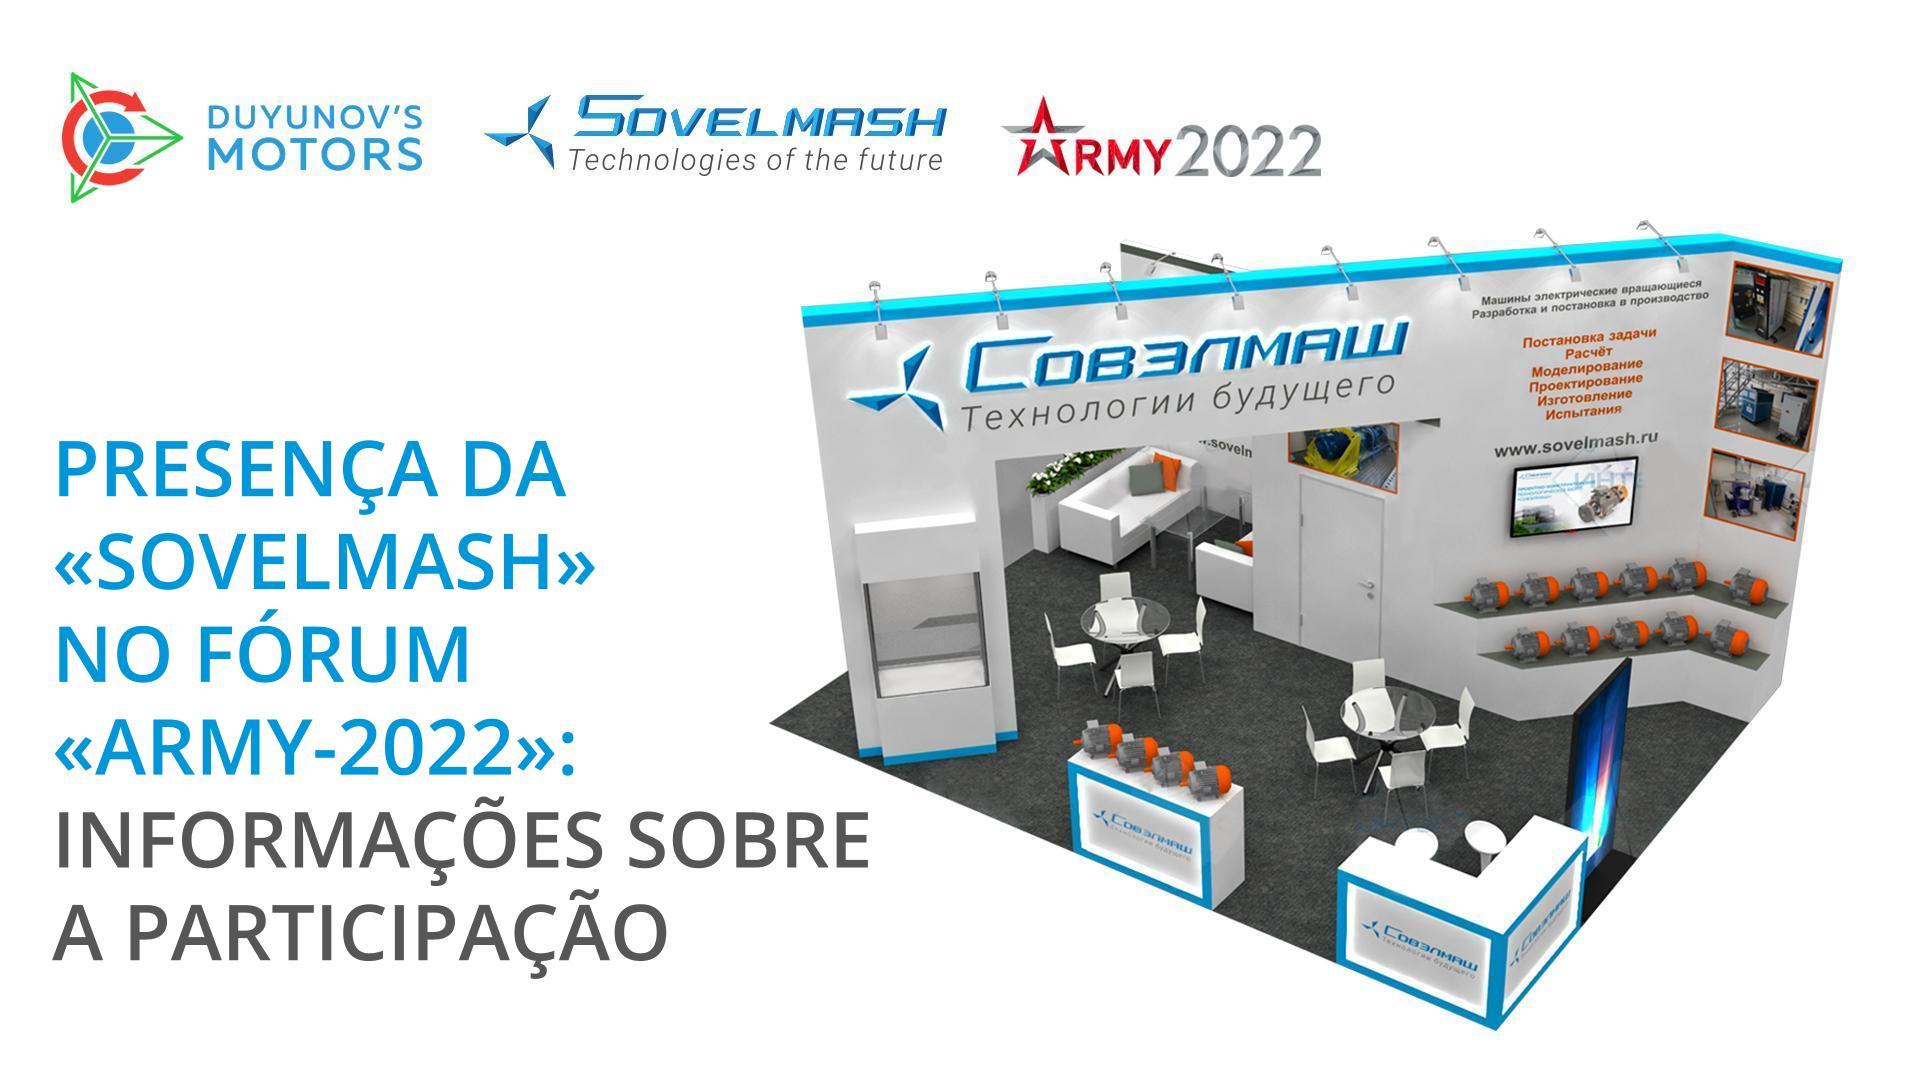 Presença da "Sovelmash" no fórum "Army-2022": informações sobre a participação